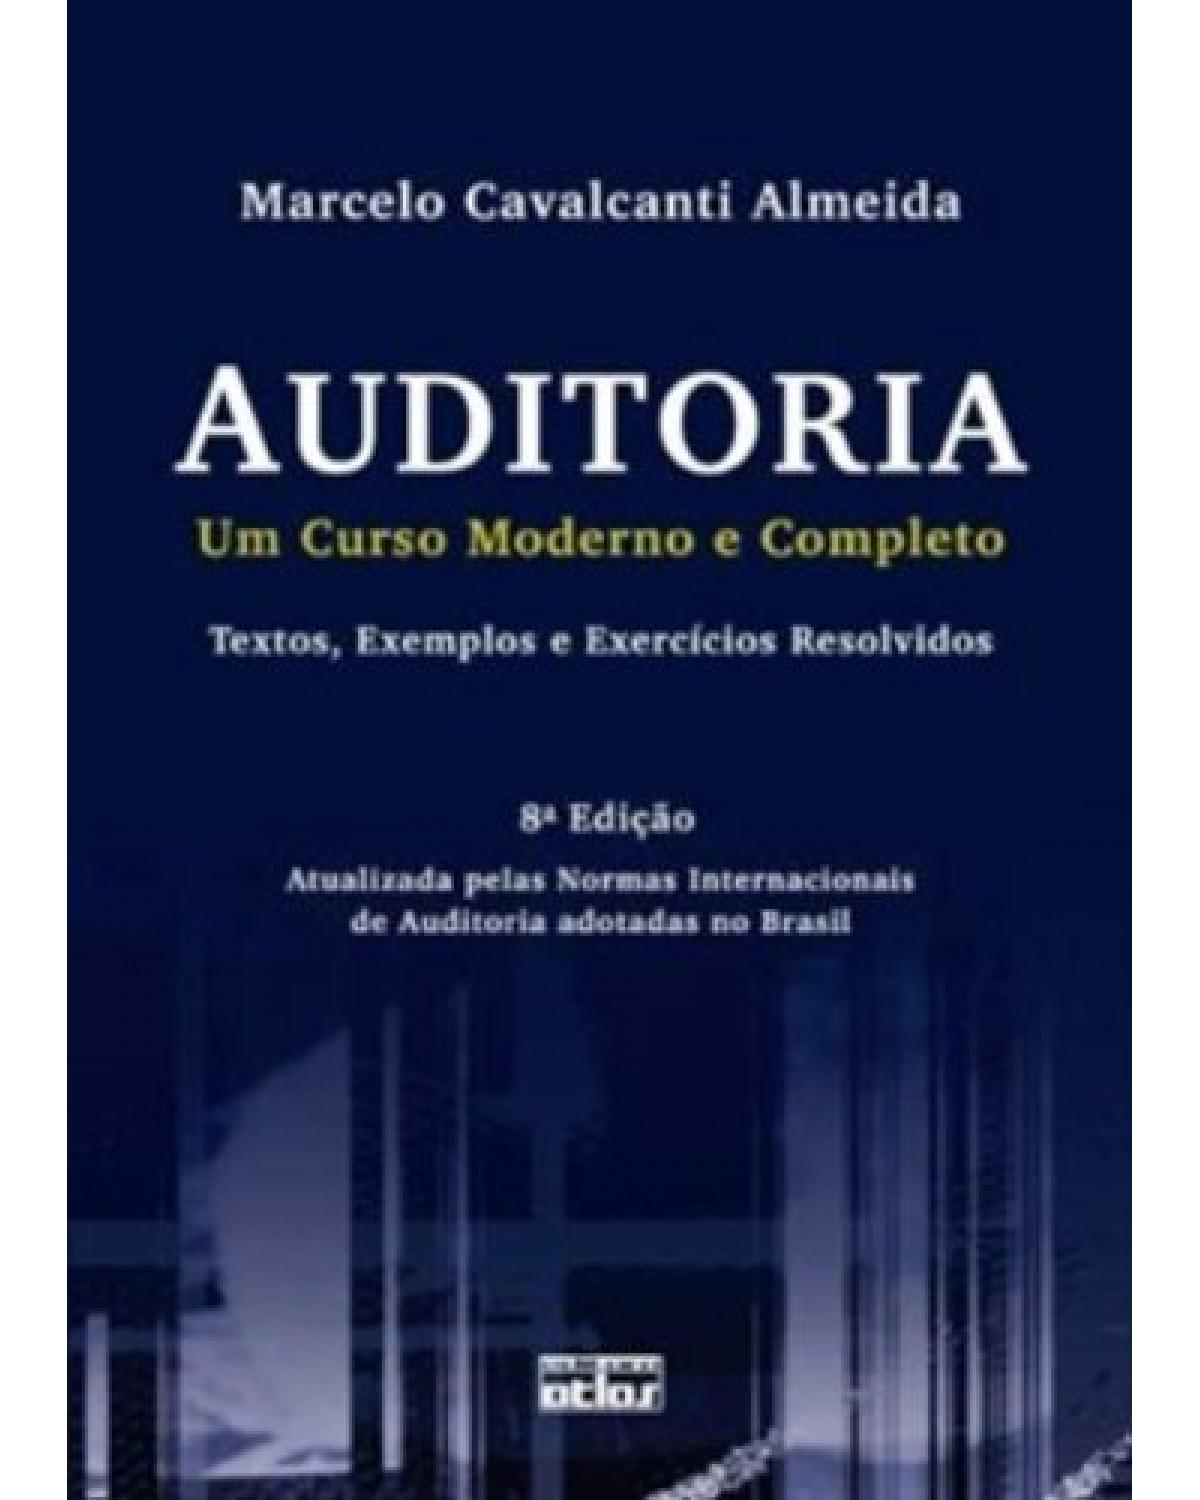 Auditoria - Um curso moderno e completo - Textos, exemplos e exercícios resolvidos - 8ª Edição | 2012